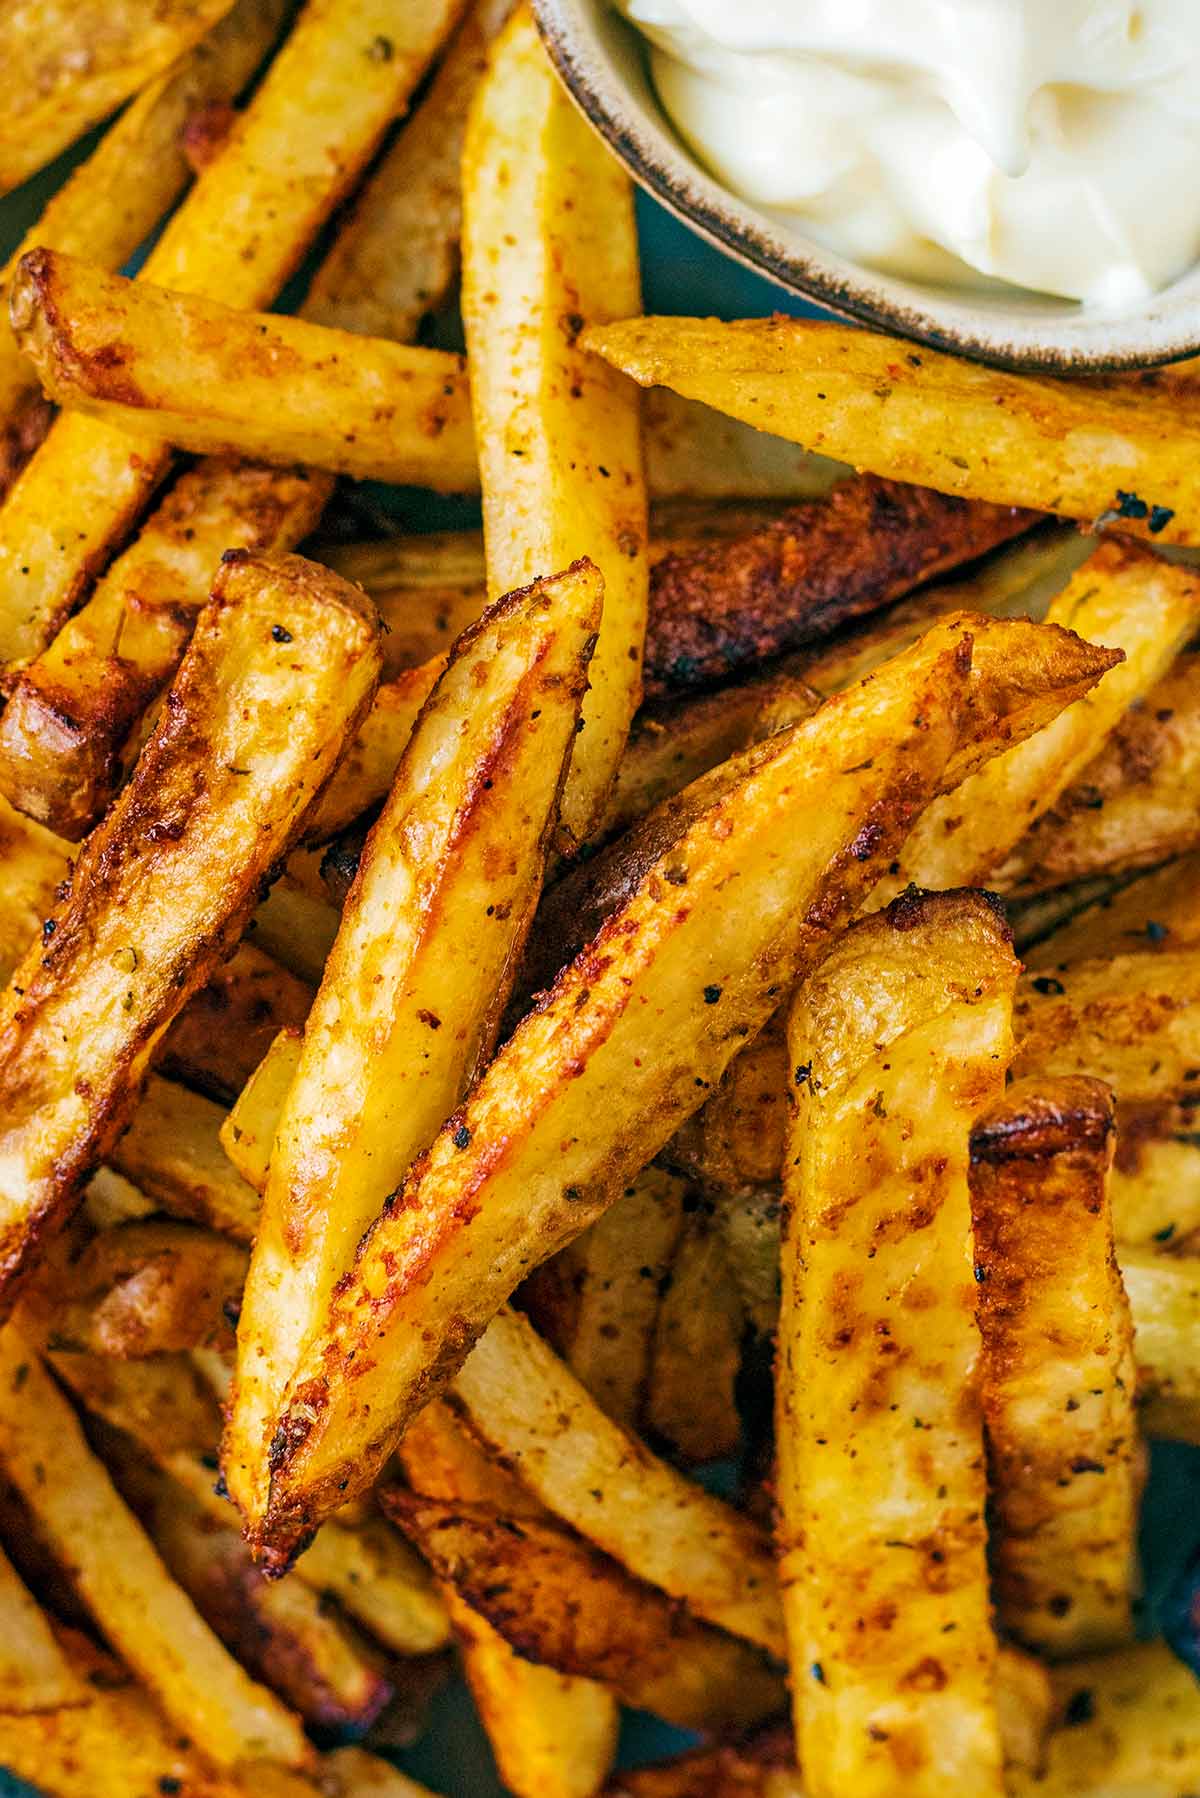 A pile of seasoned skin on fries.